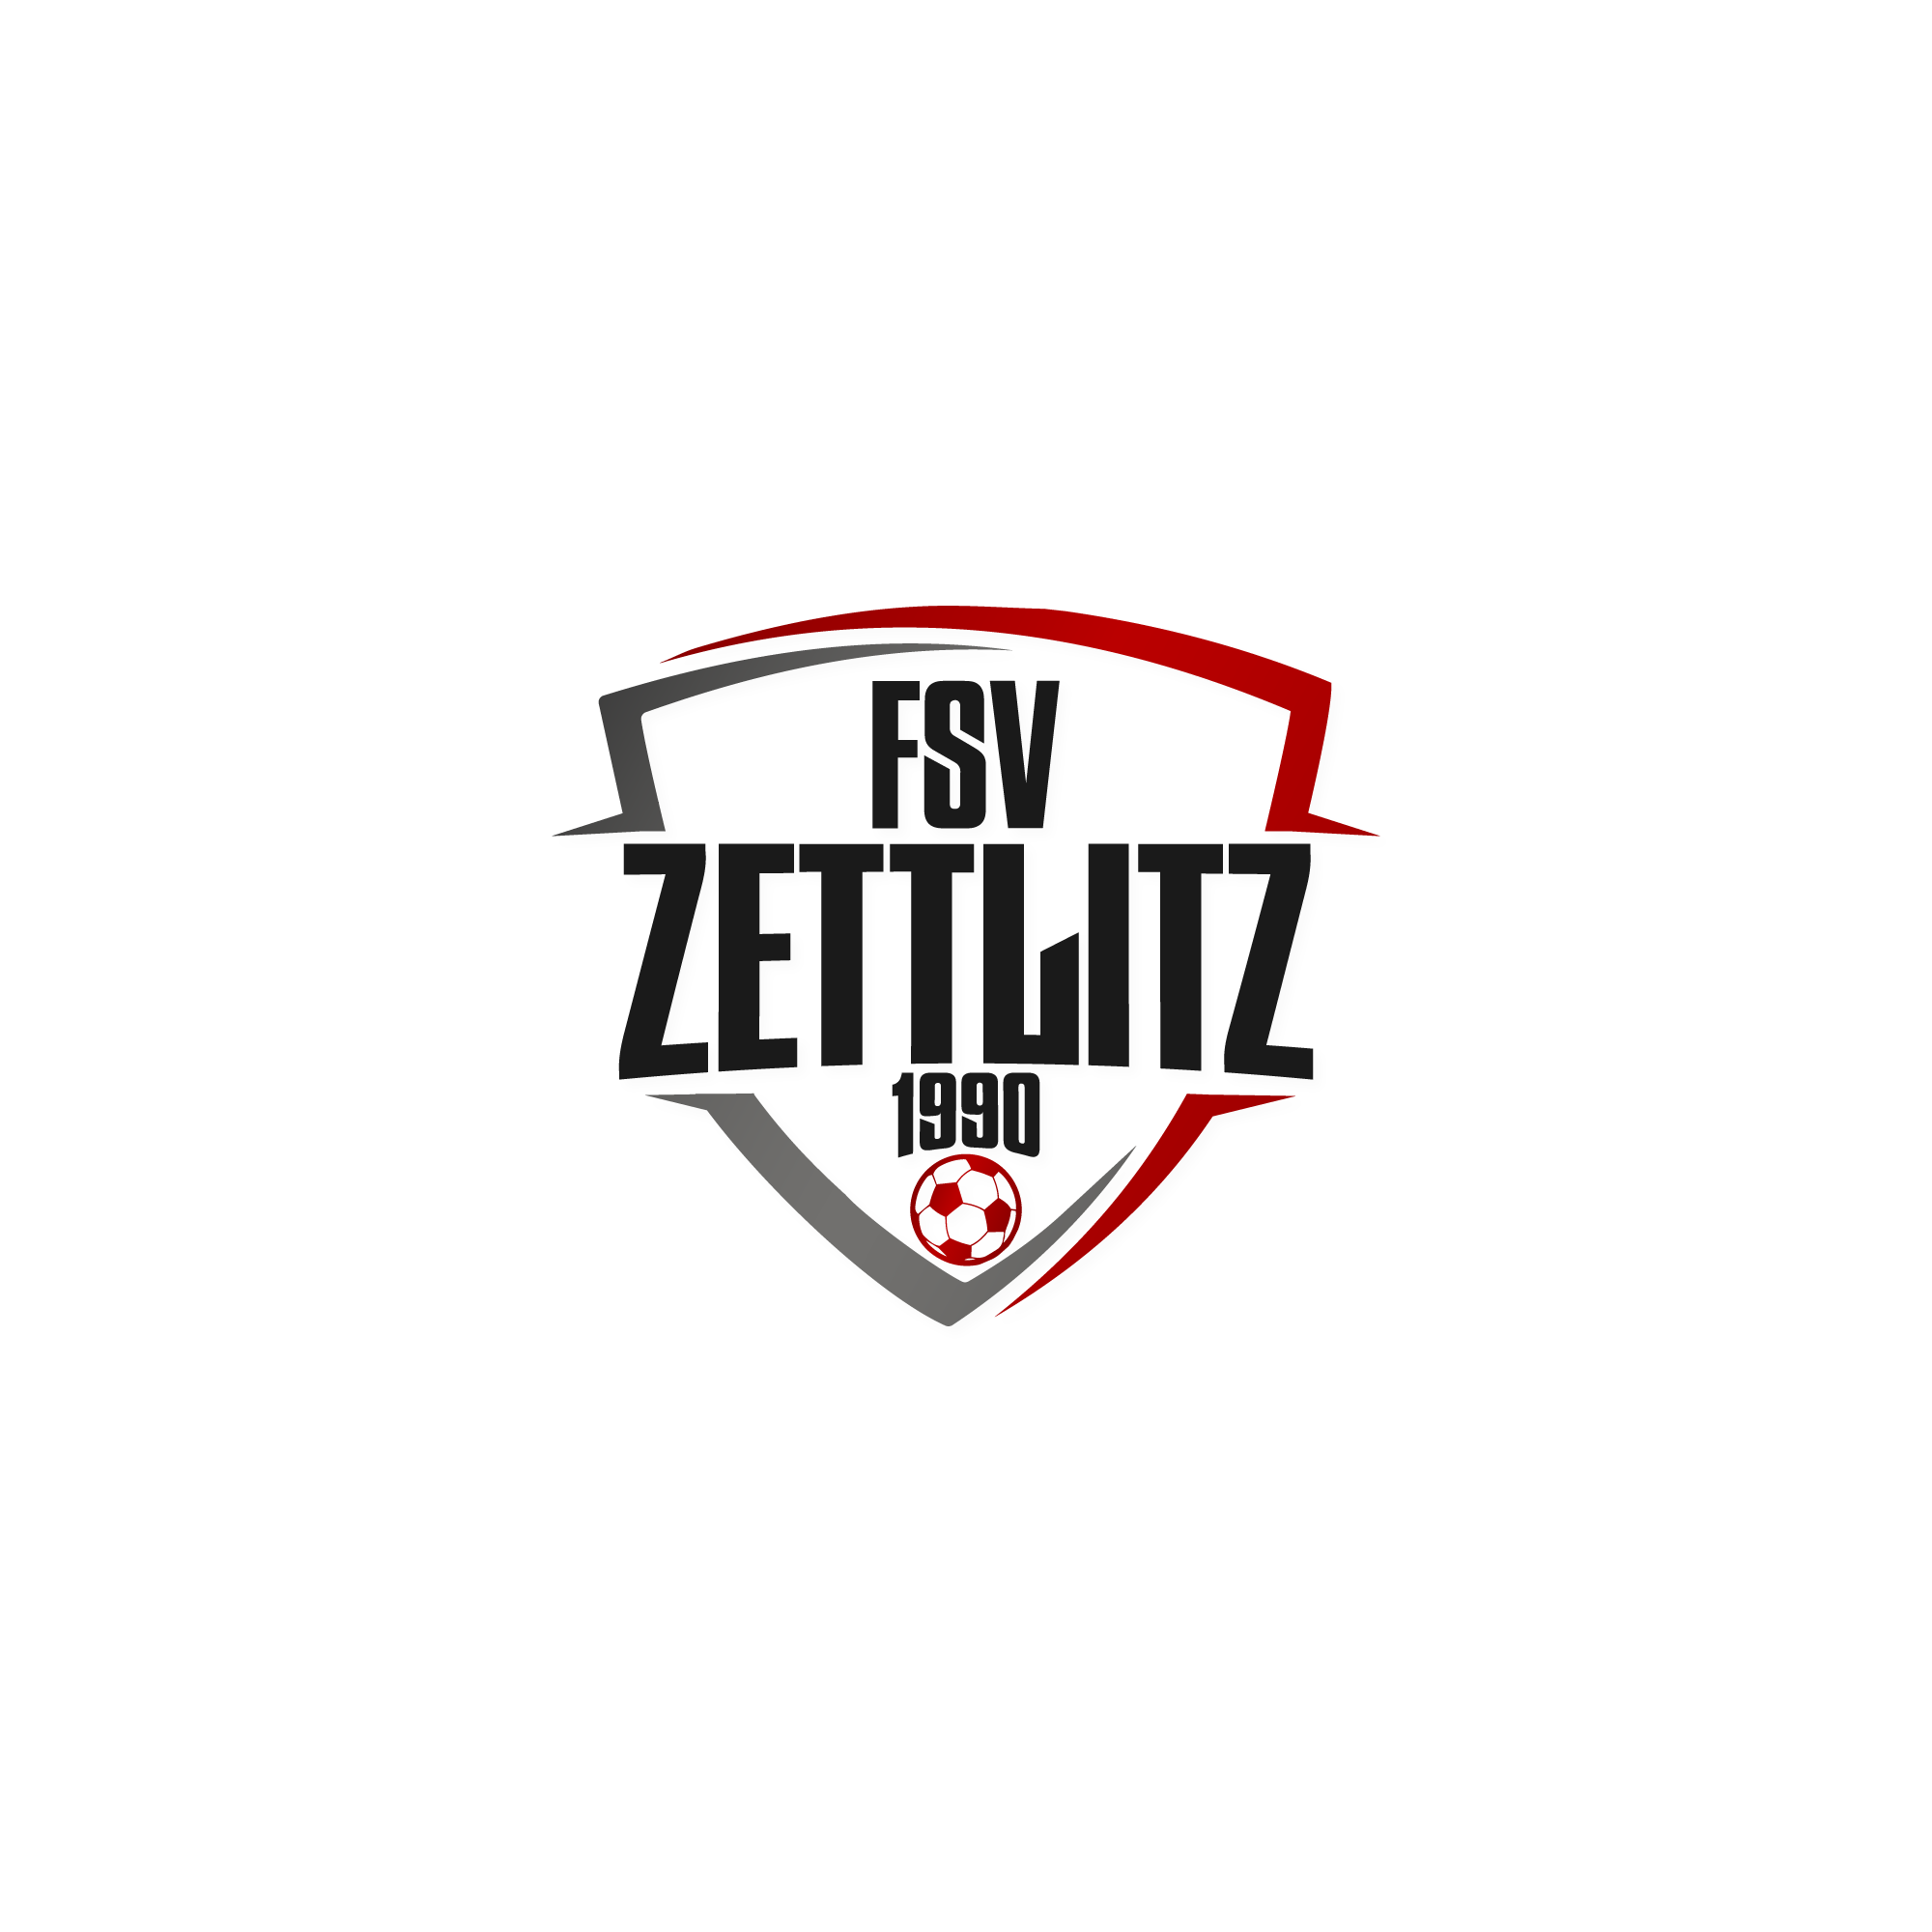 Wappen / Logo des Teams FSV Zettlitz 1990